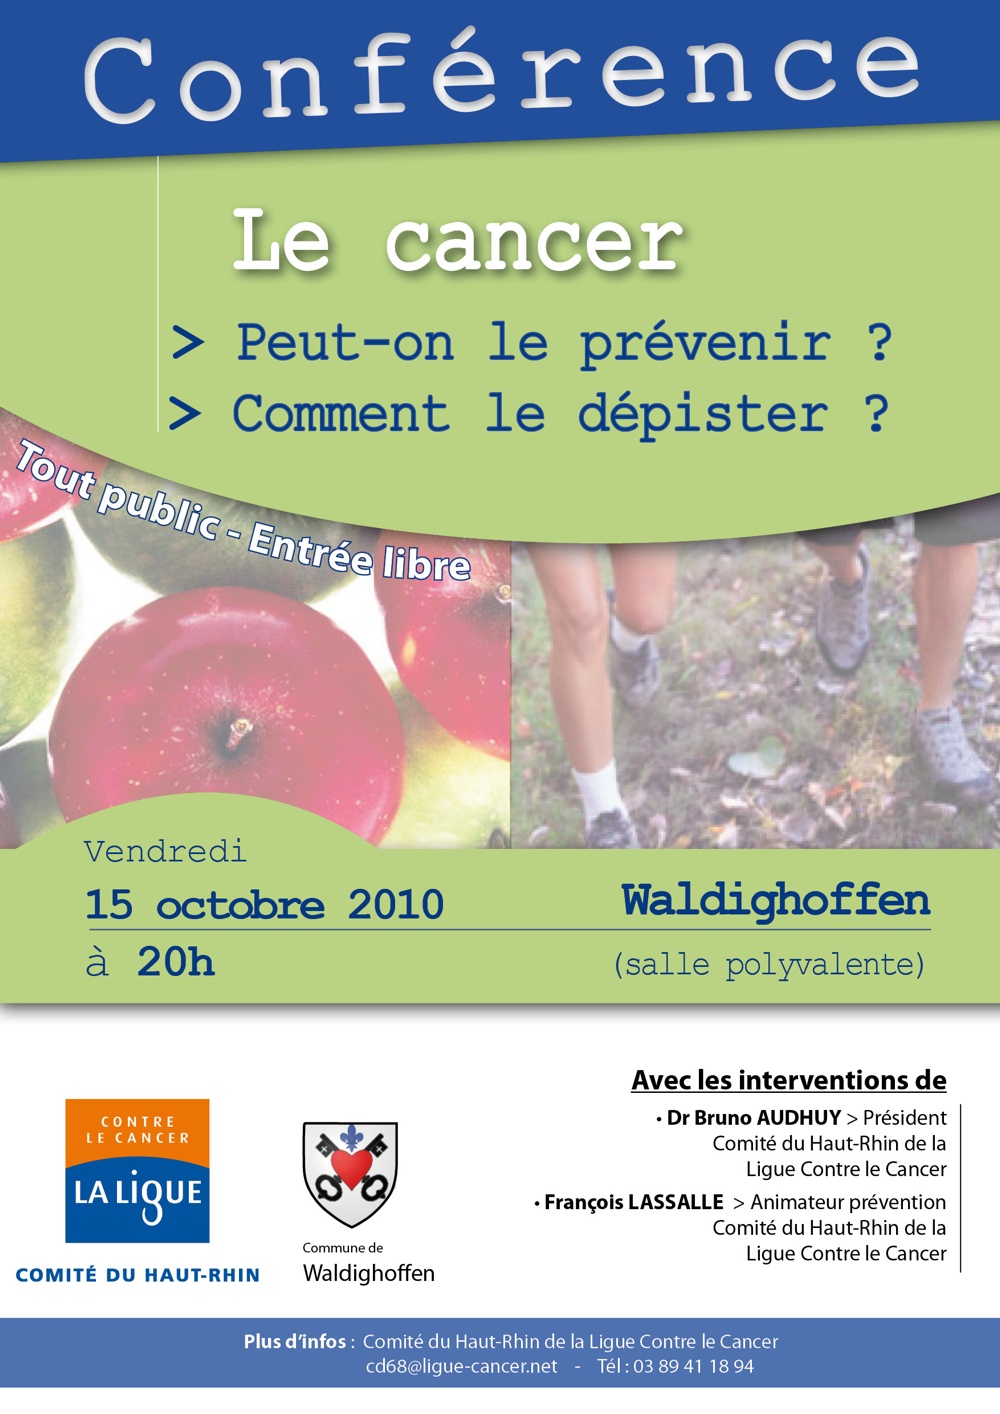 Affiche conférence cancer du 15 octobre 2010 à Waldighoffen